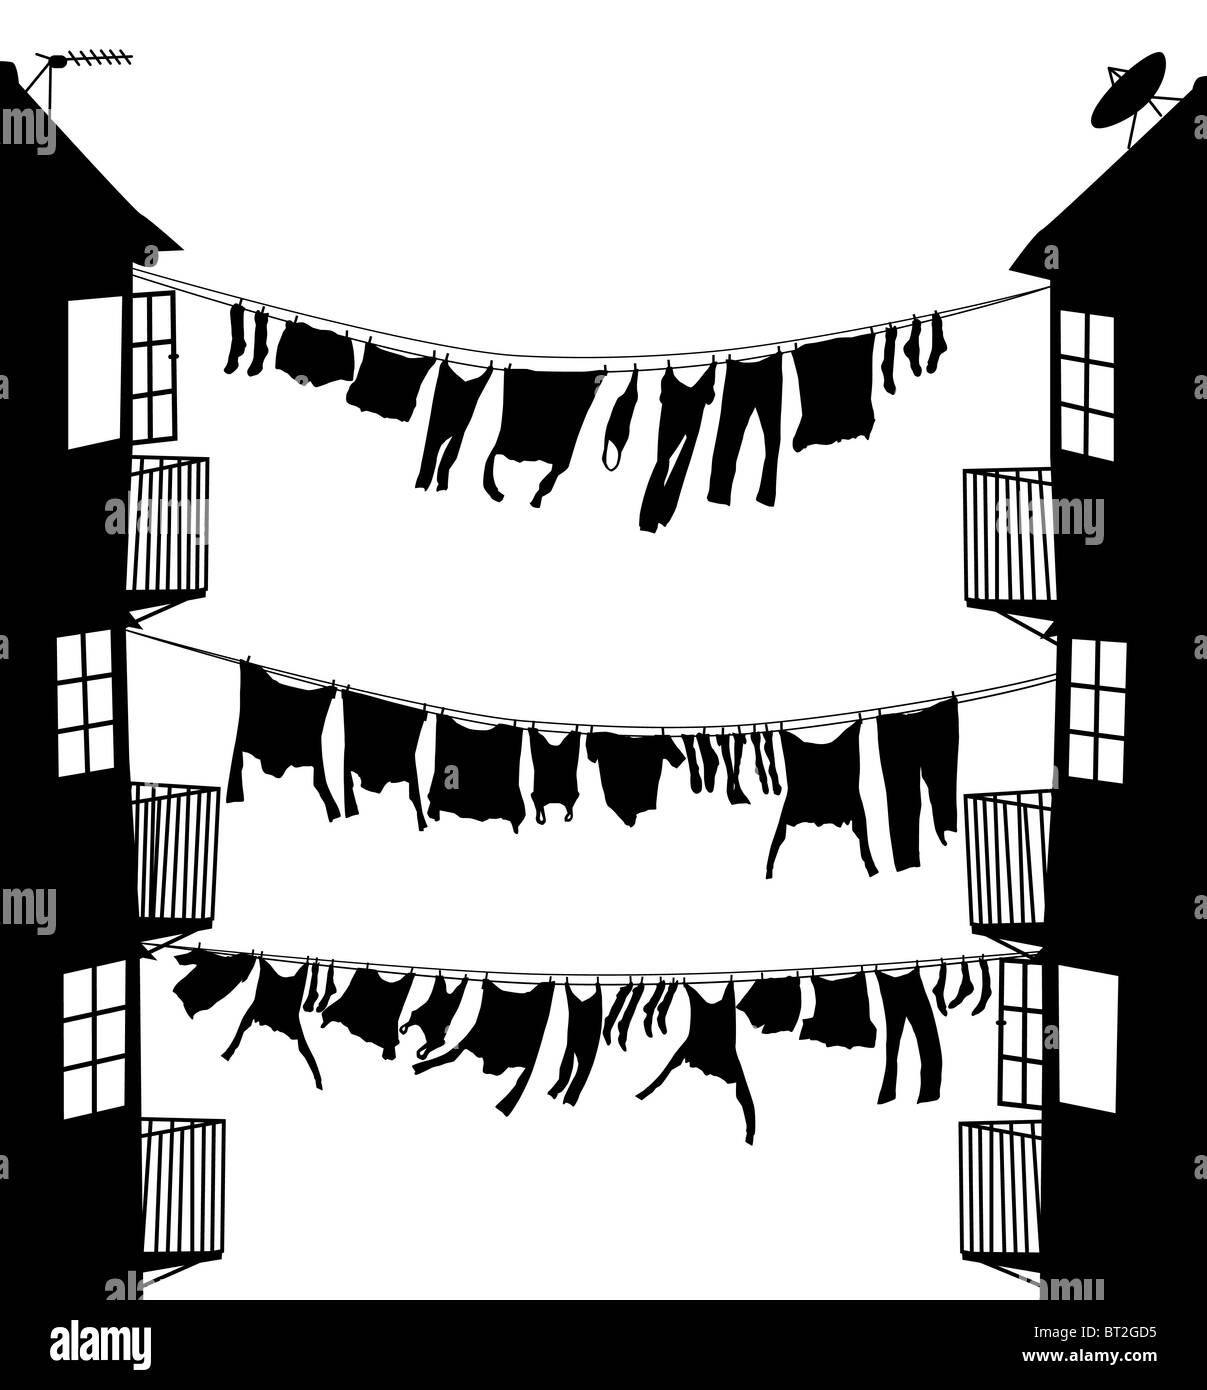 L'Illustre silhouette du lave-suspendu entre maisons dans une ruelle Banque D'Images